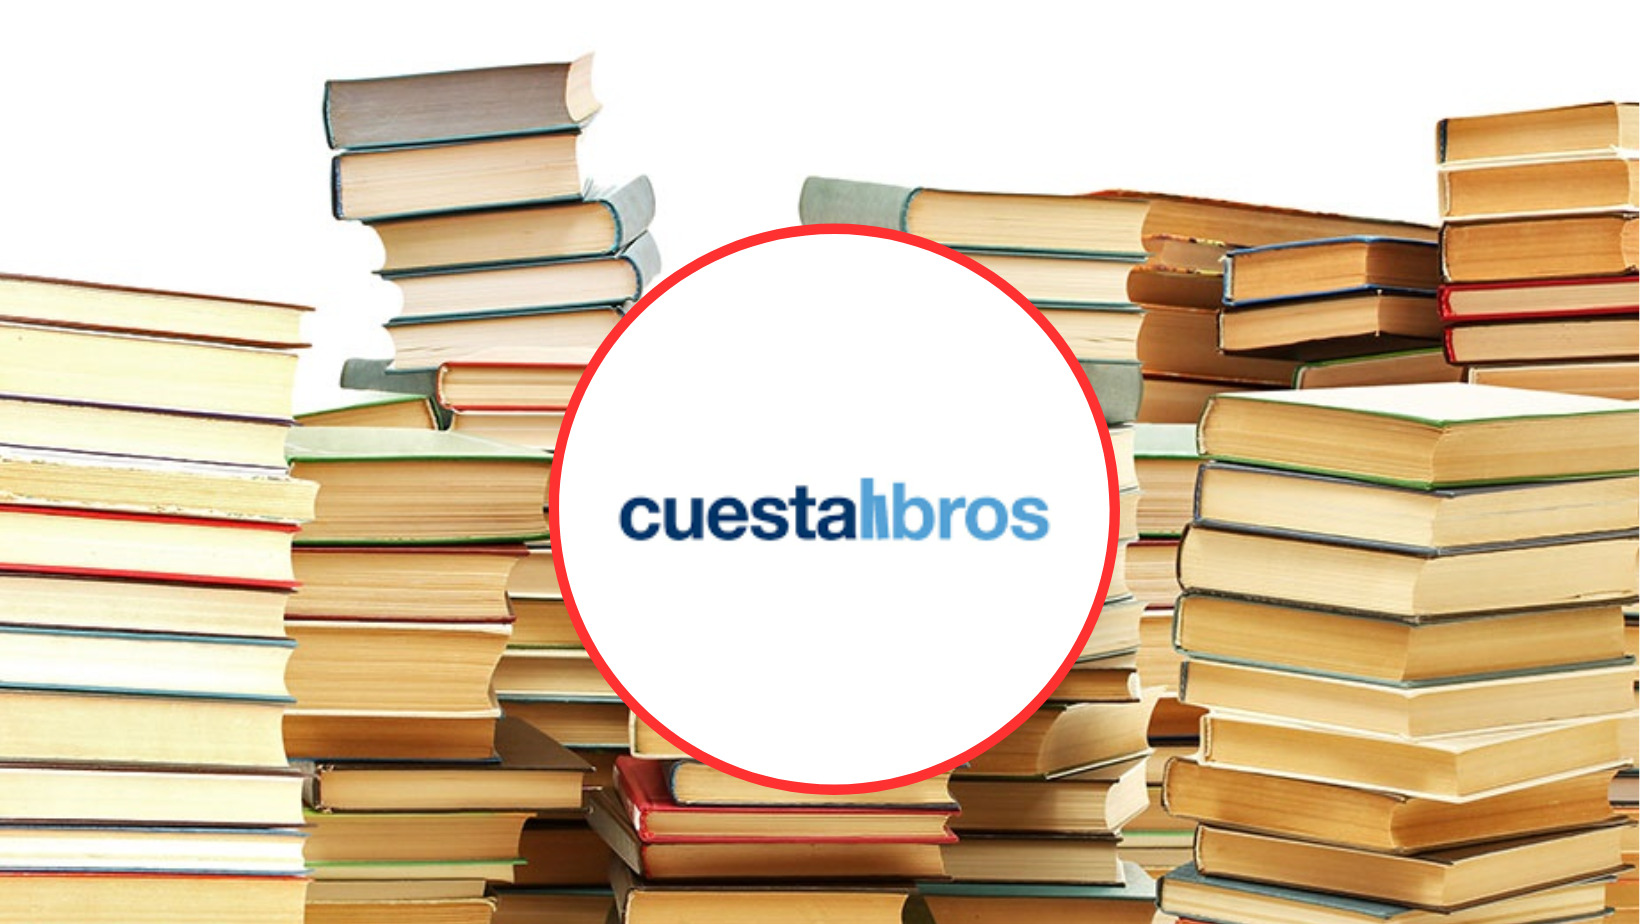 Los 25 libros más vendidos de 2023: de Arturo Pérez-Reverte a Juan